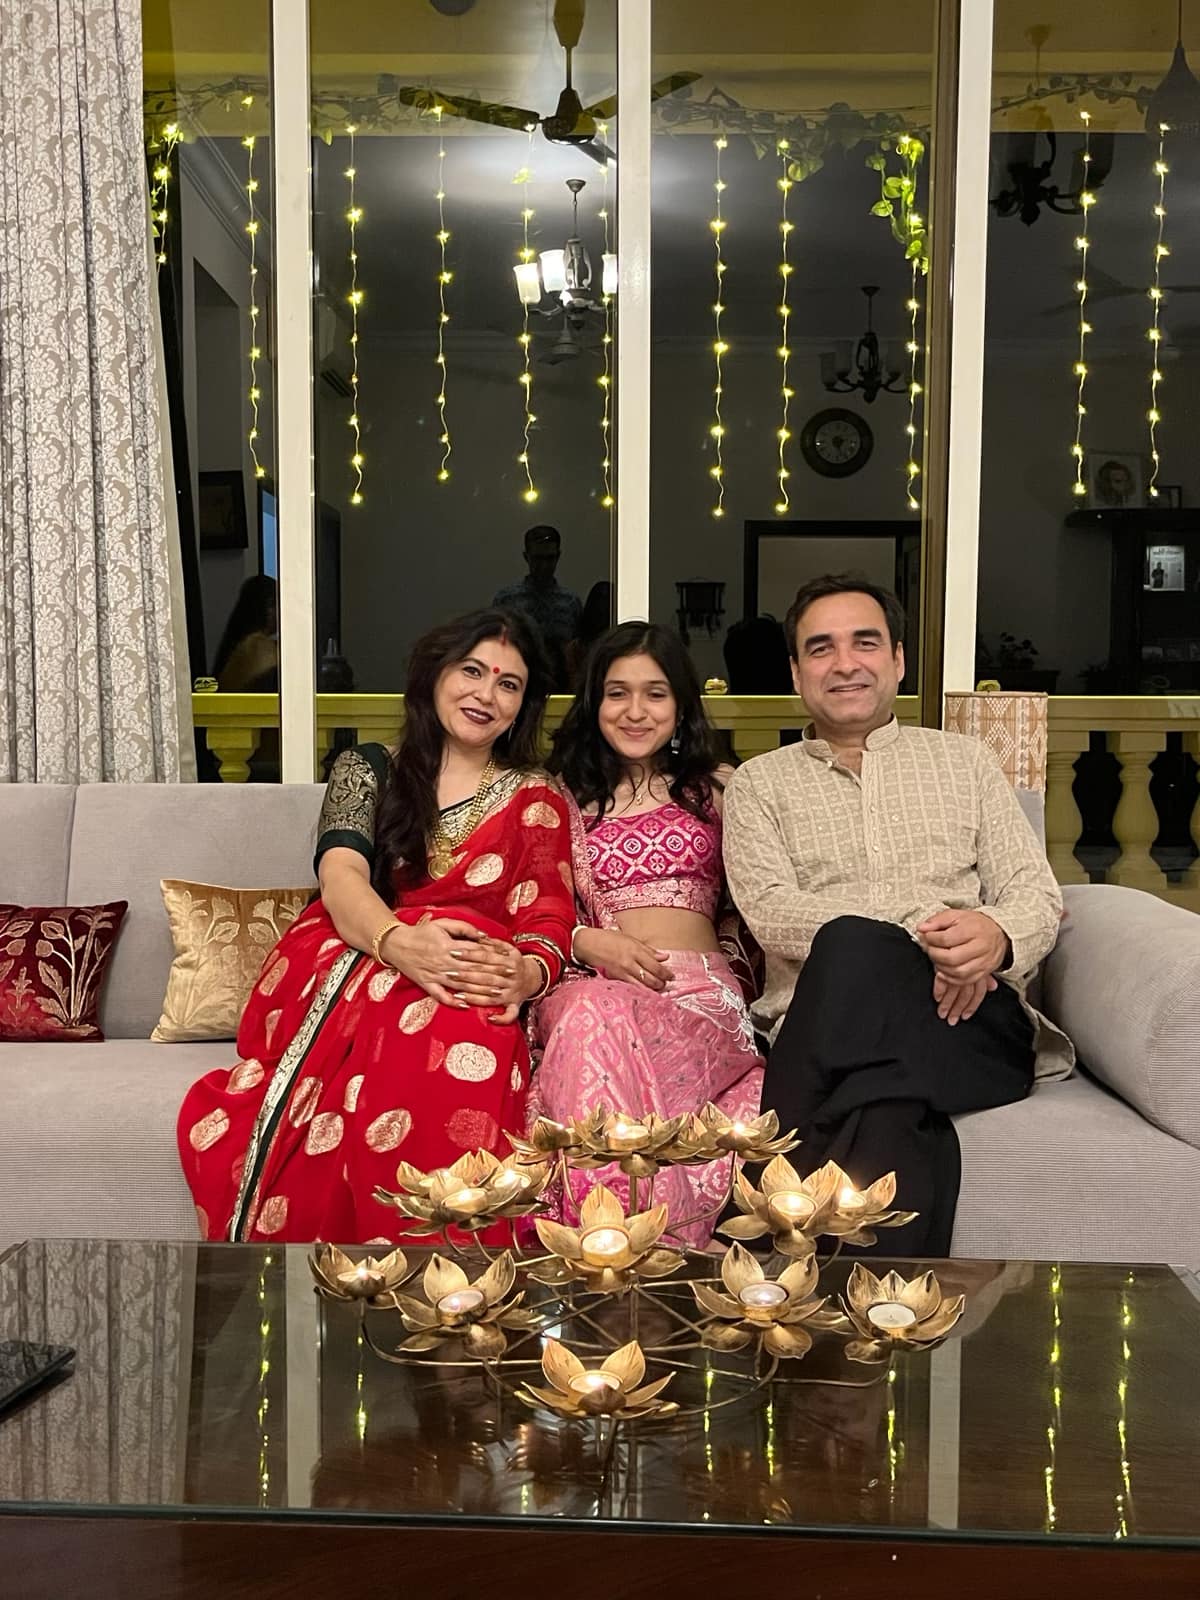 Actor Pankaj Tripathi celebrates Diwali with family 